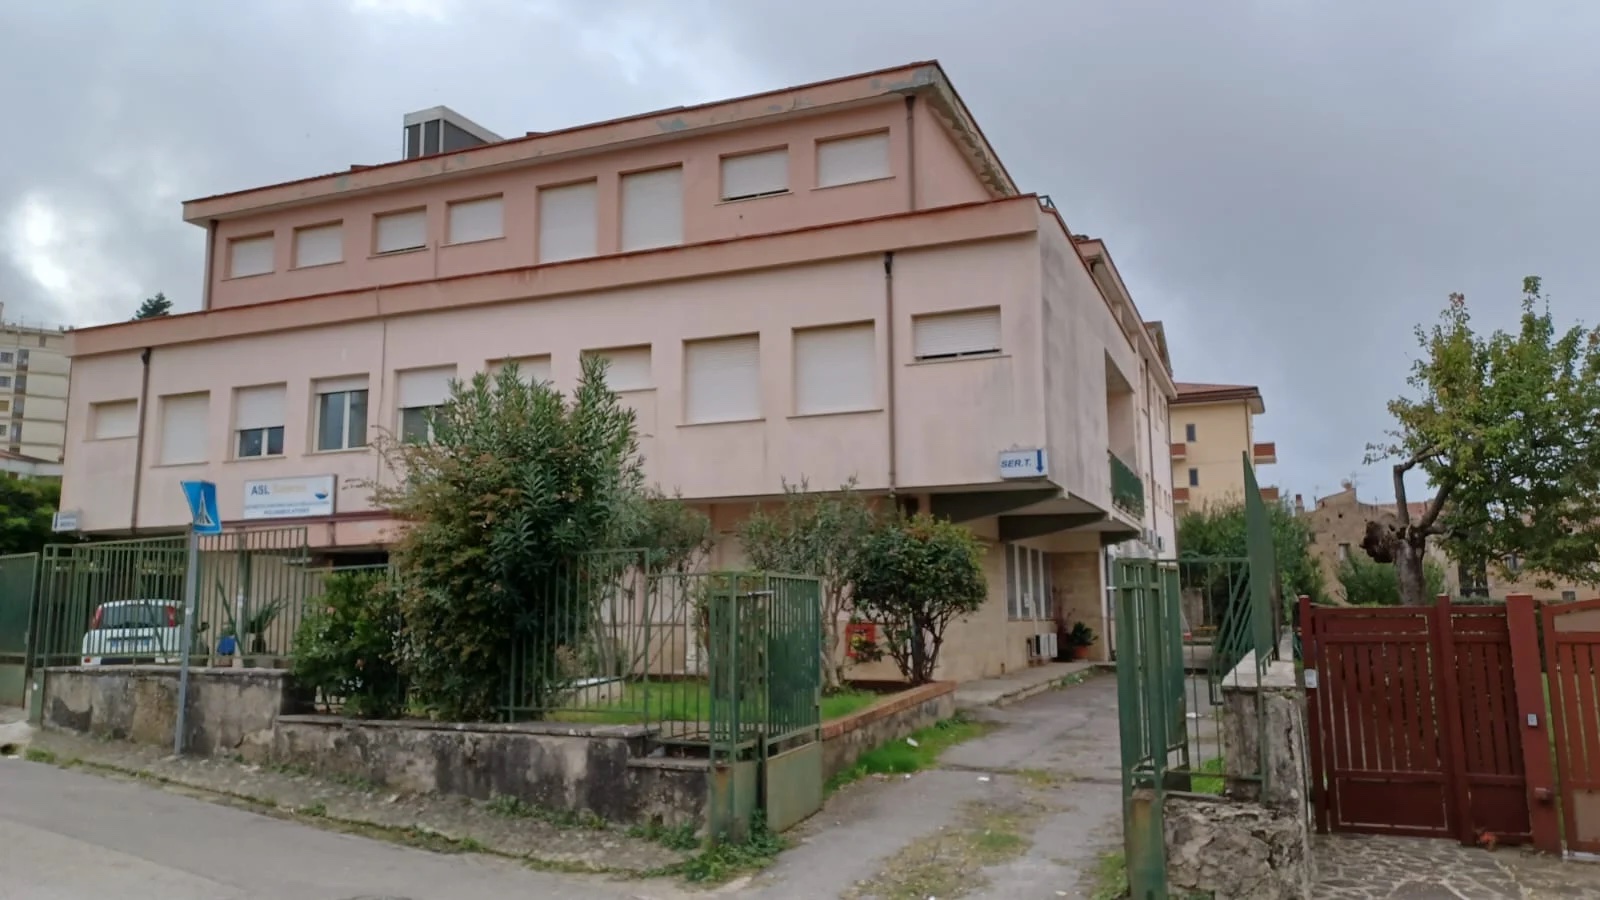 Vallo della Lucania: Serd aperto un solo giorno a settimana, è polemica